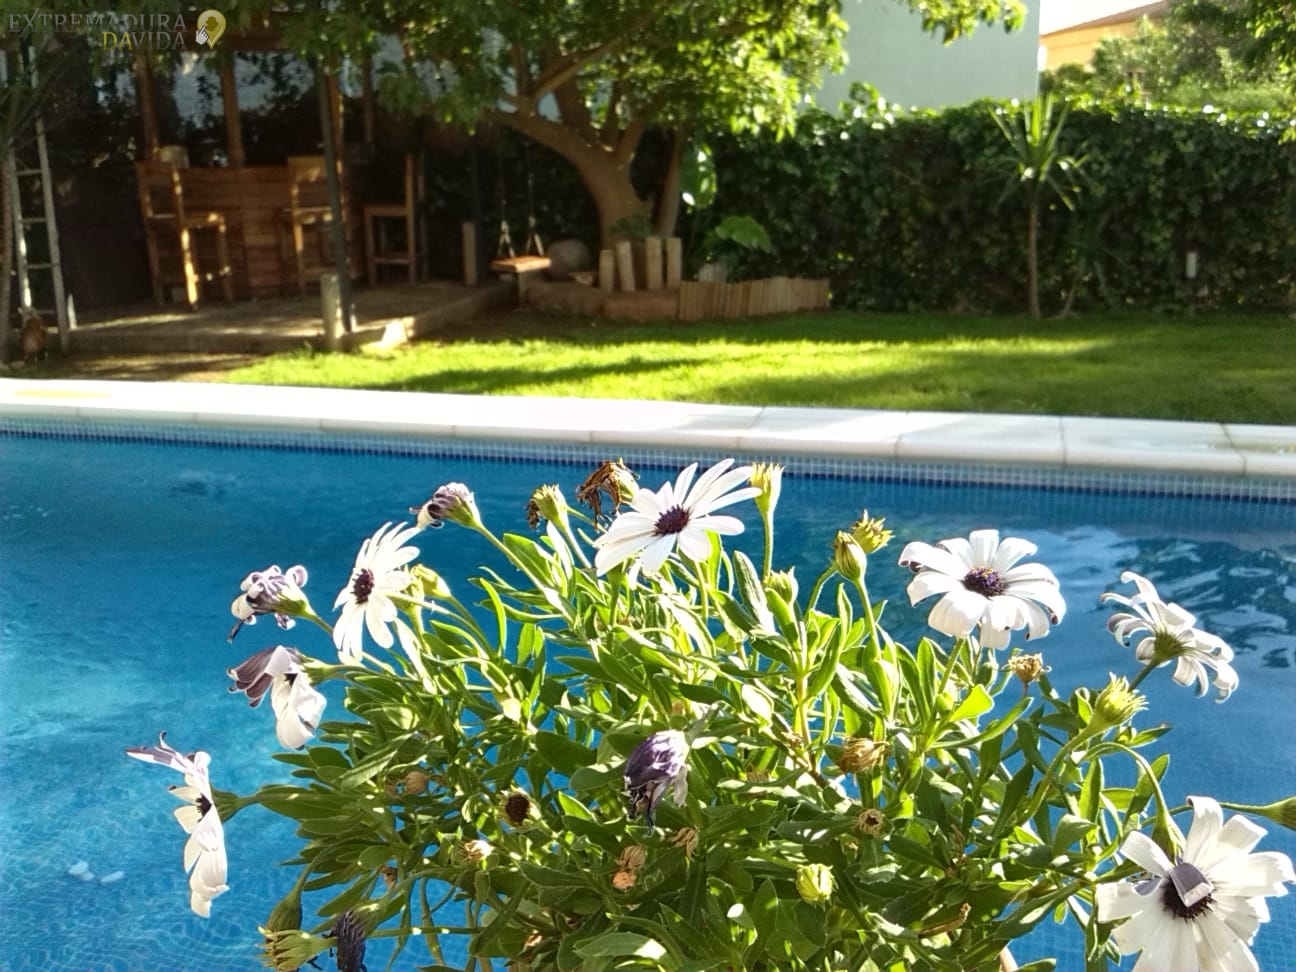 Para alquilar para vacaciones en Almendralejo chalet o casa de lujo con piscina en Extremadura